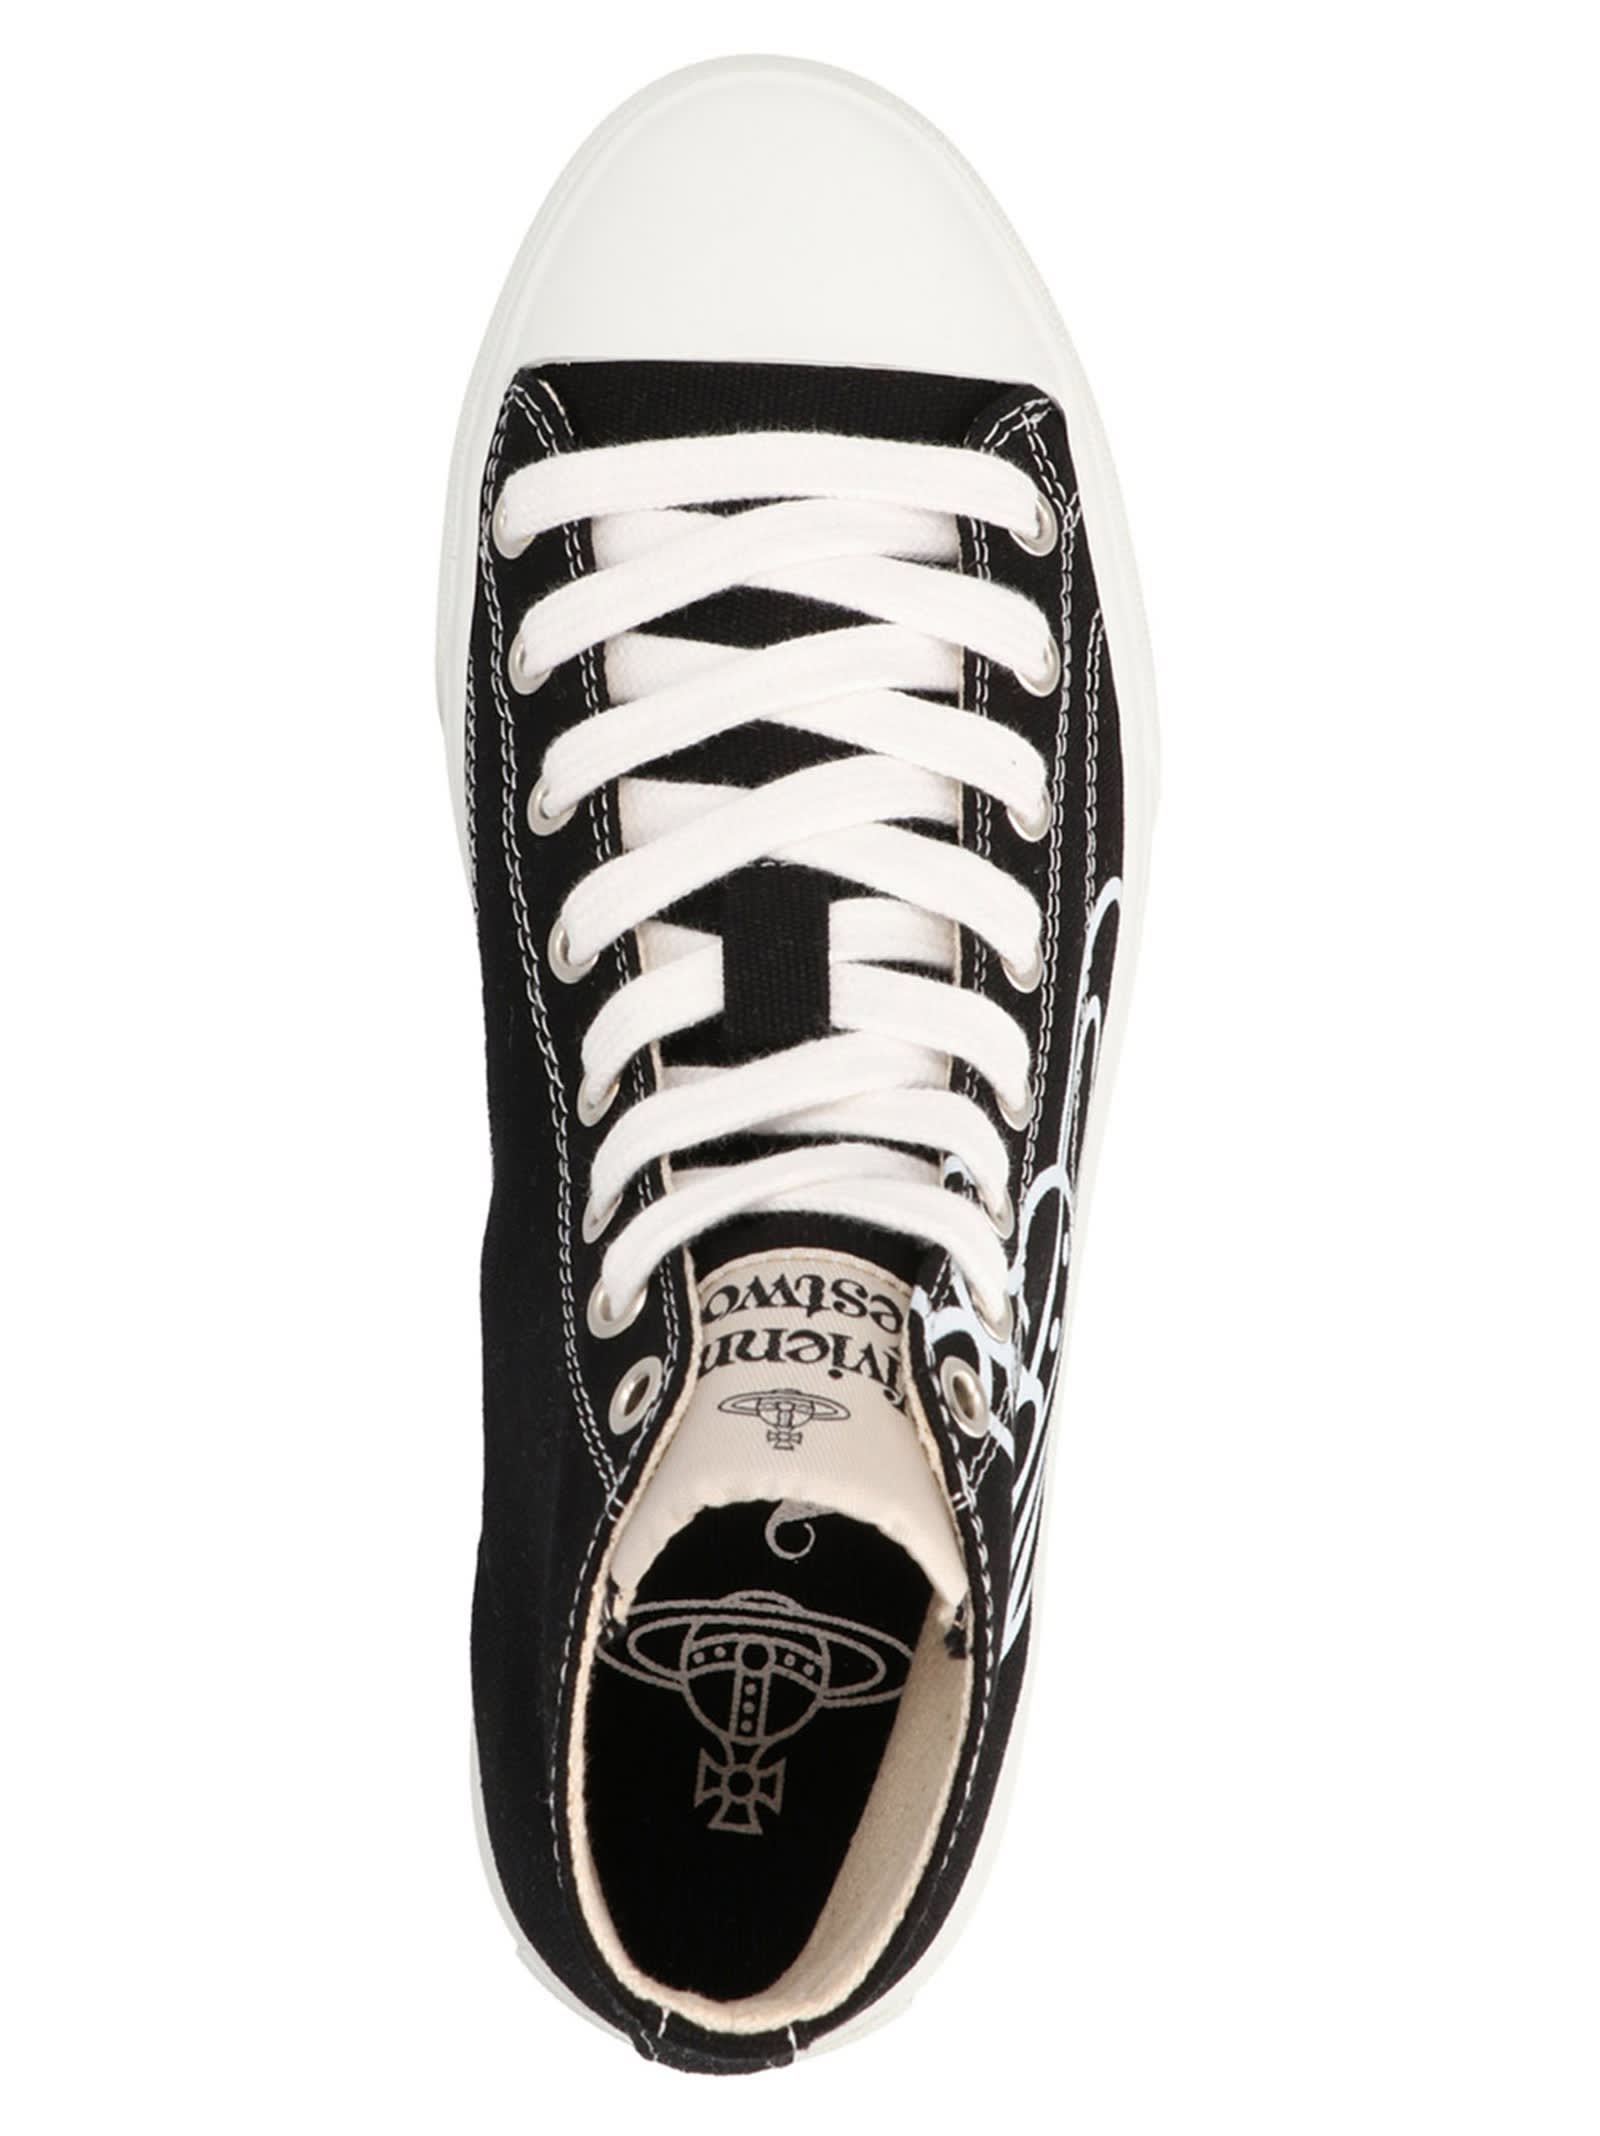 Shop Vivienne Westwood Plimsoll Sneakers In White/black